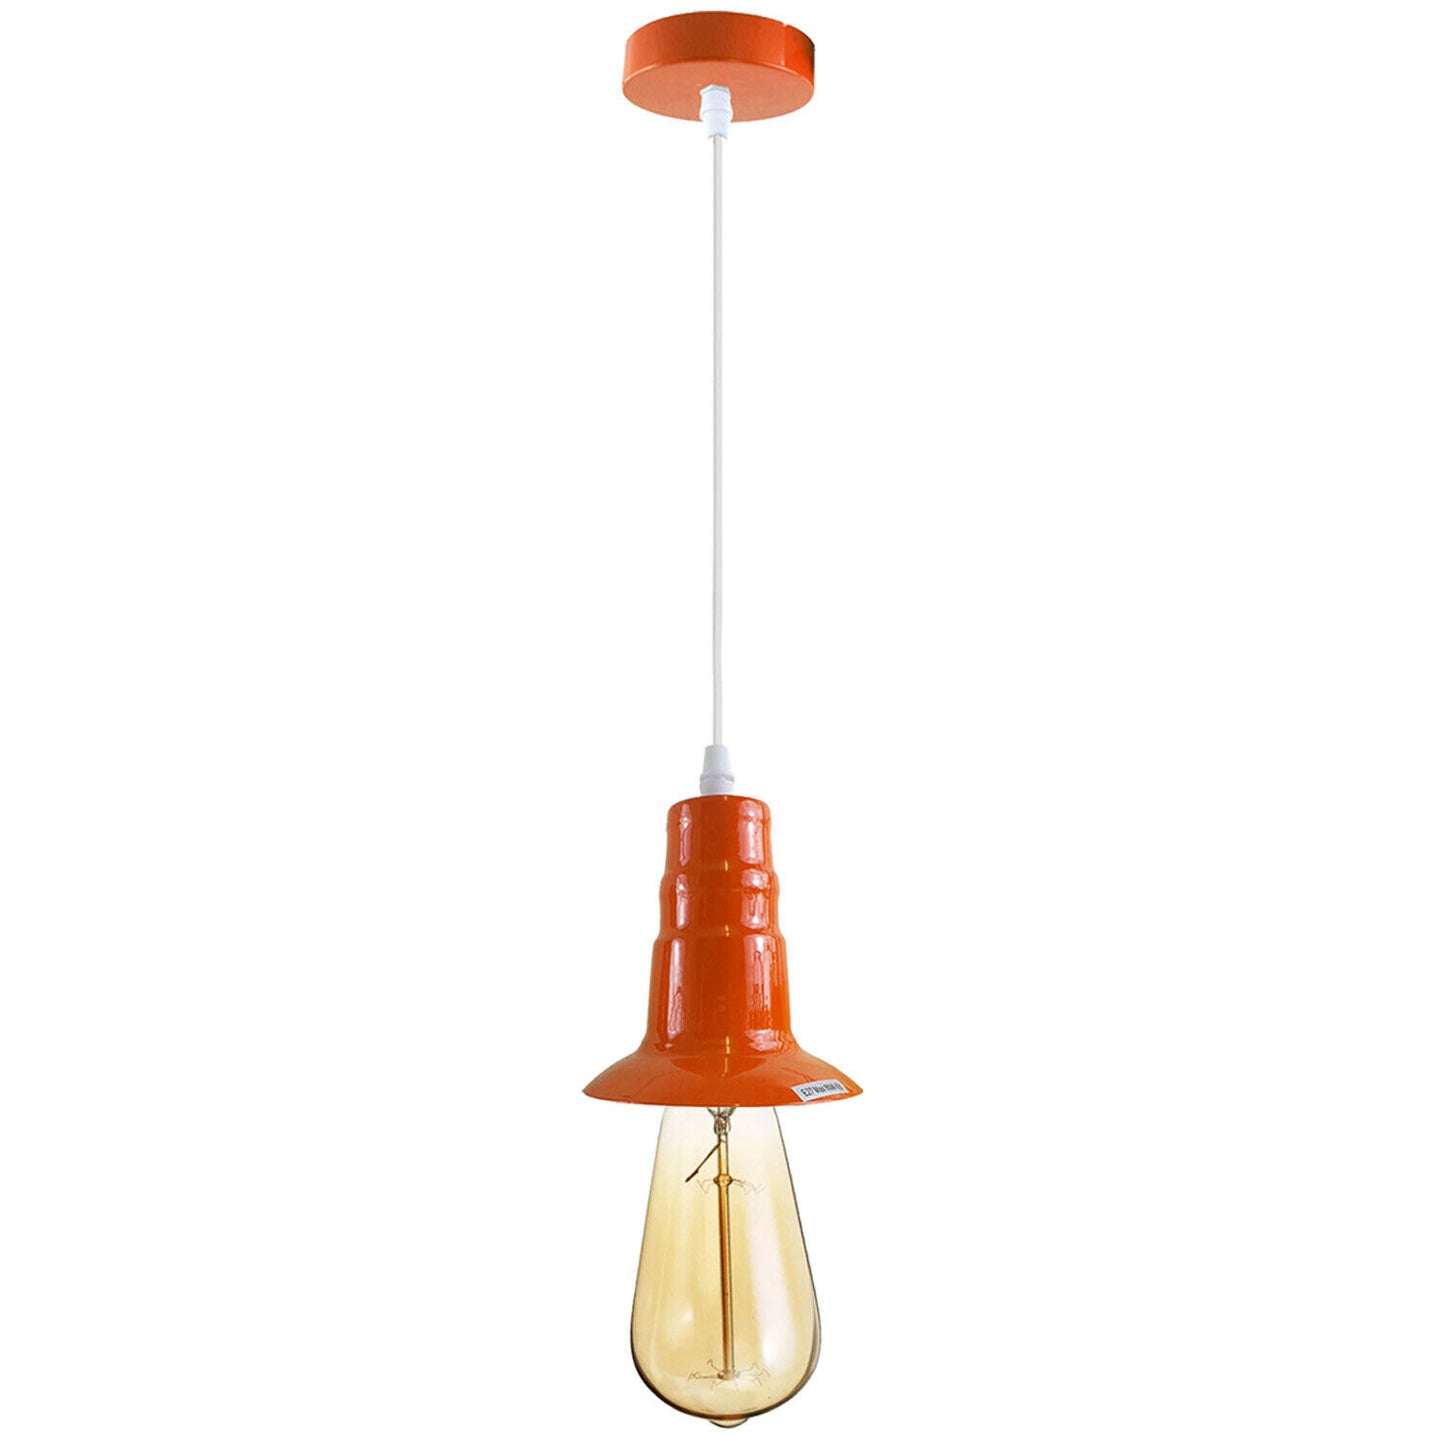 Orange Industrial Ceiling E27 Base Fitting Lamp Holder Pendant